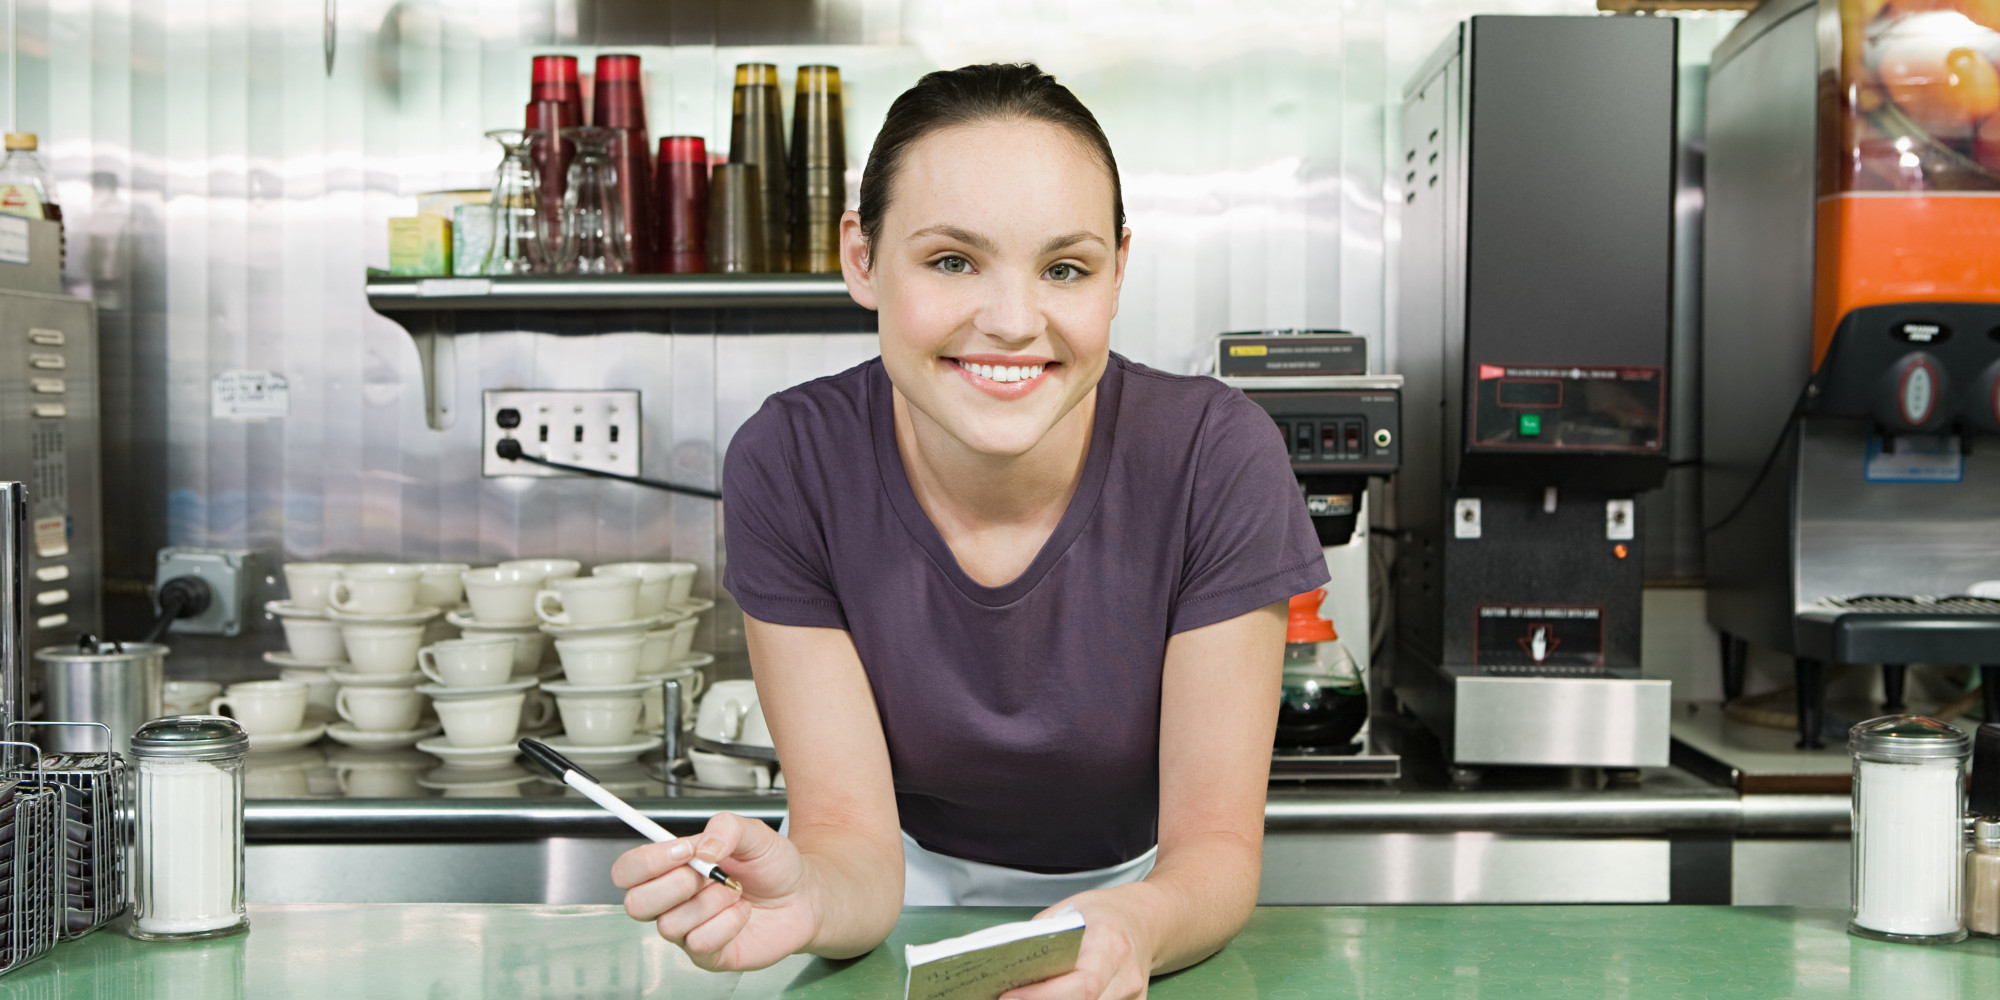 Waitress jobs hiring in philadelphia